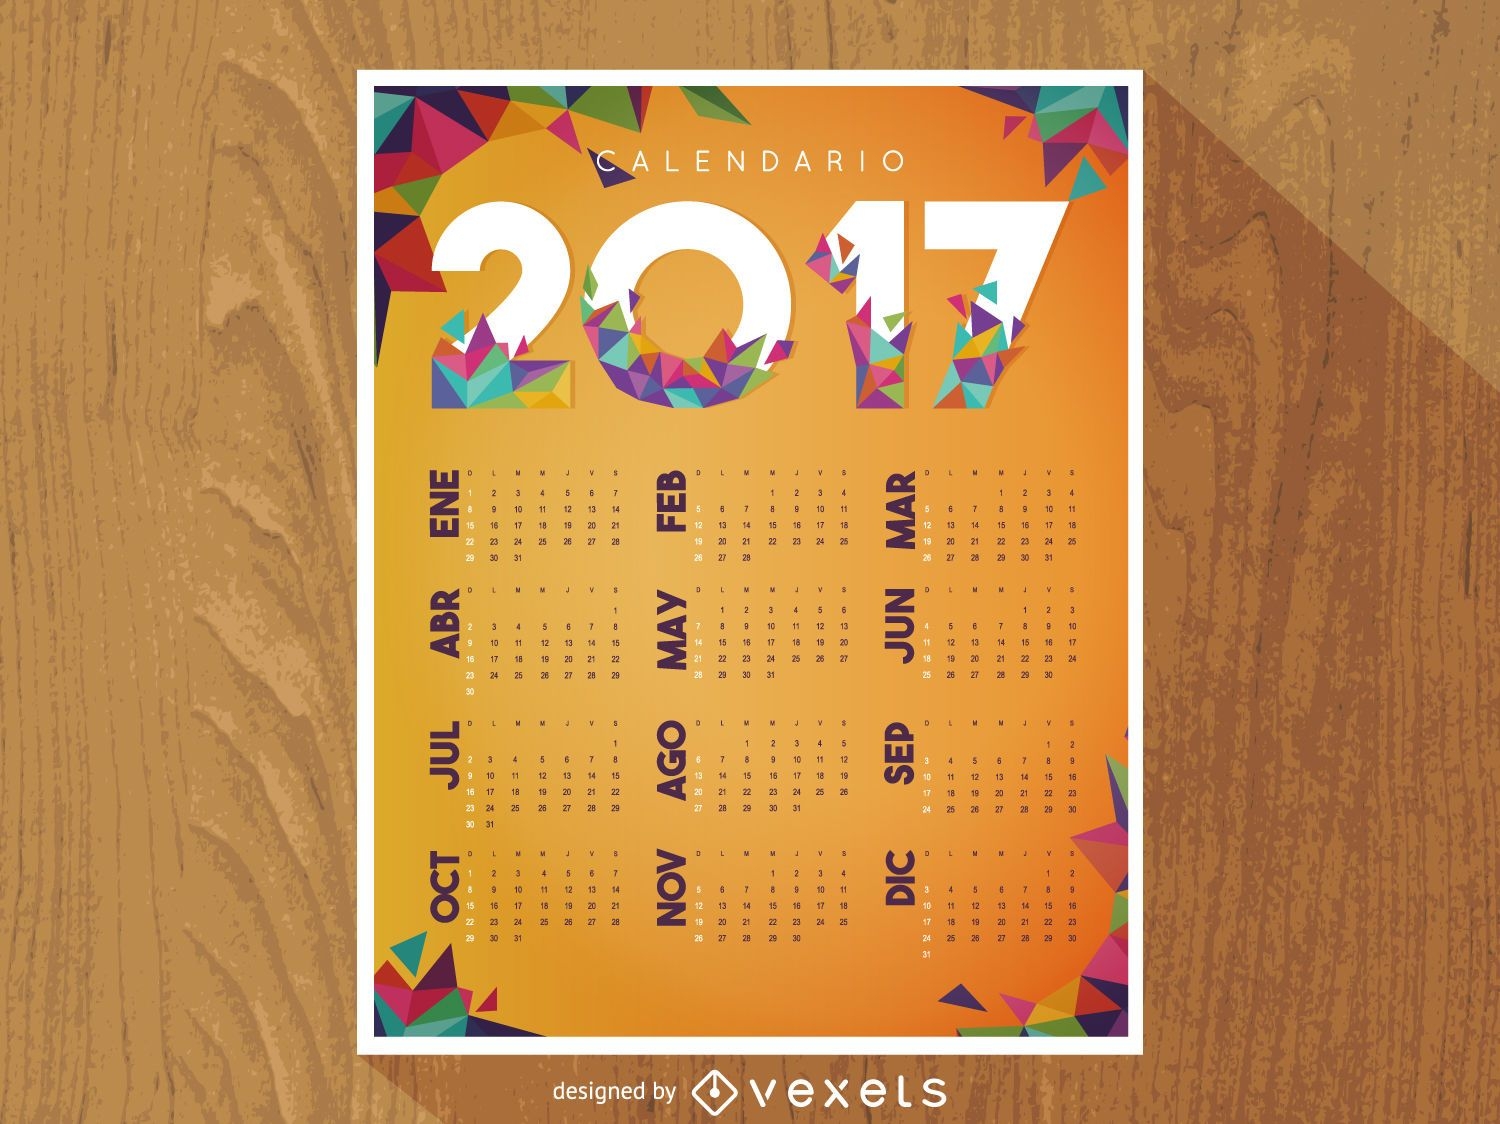 2017 polygonal calendar in Spanish